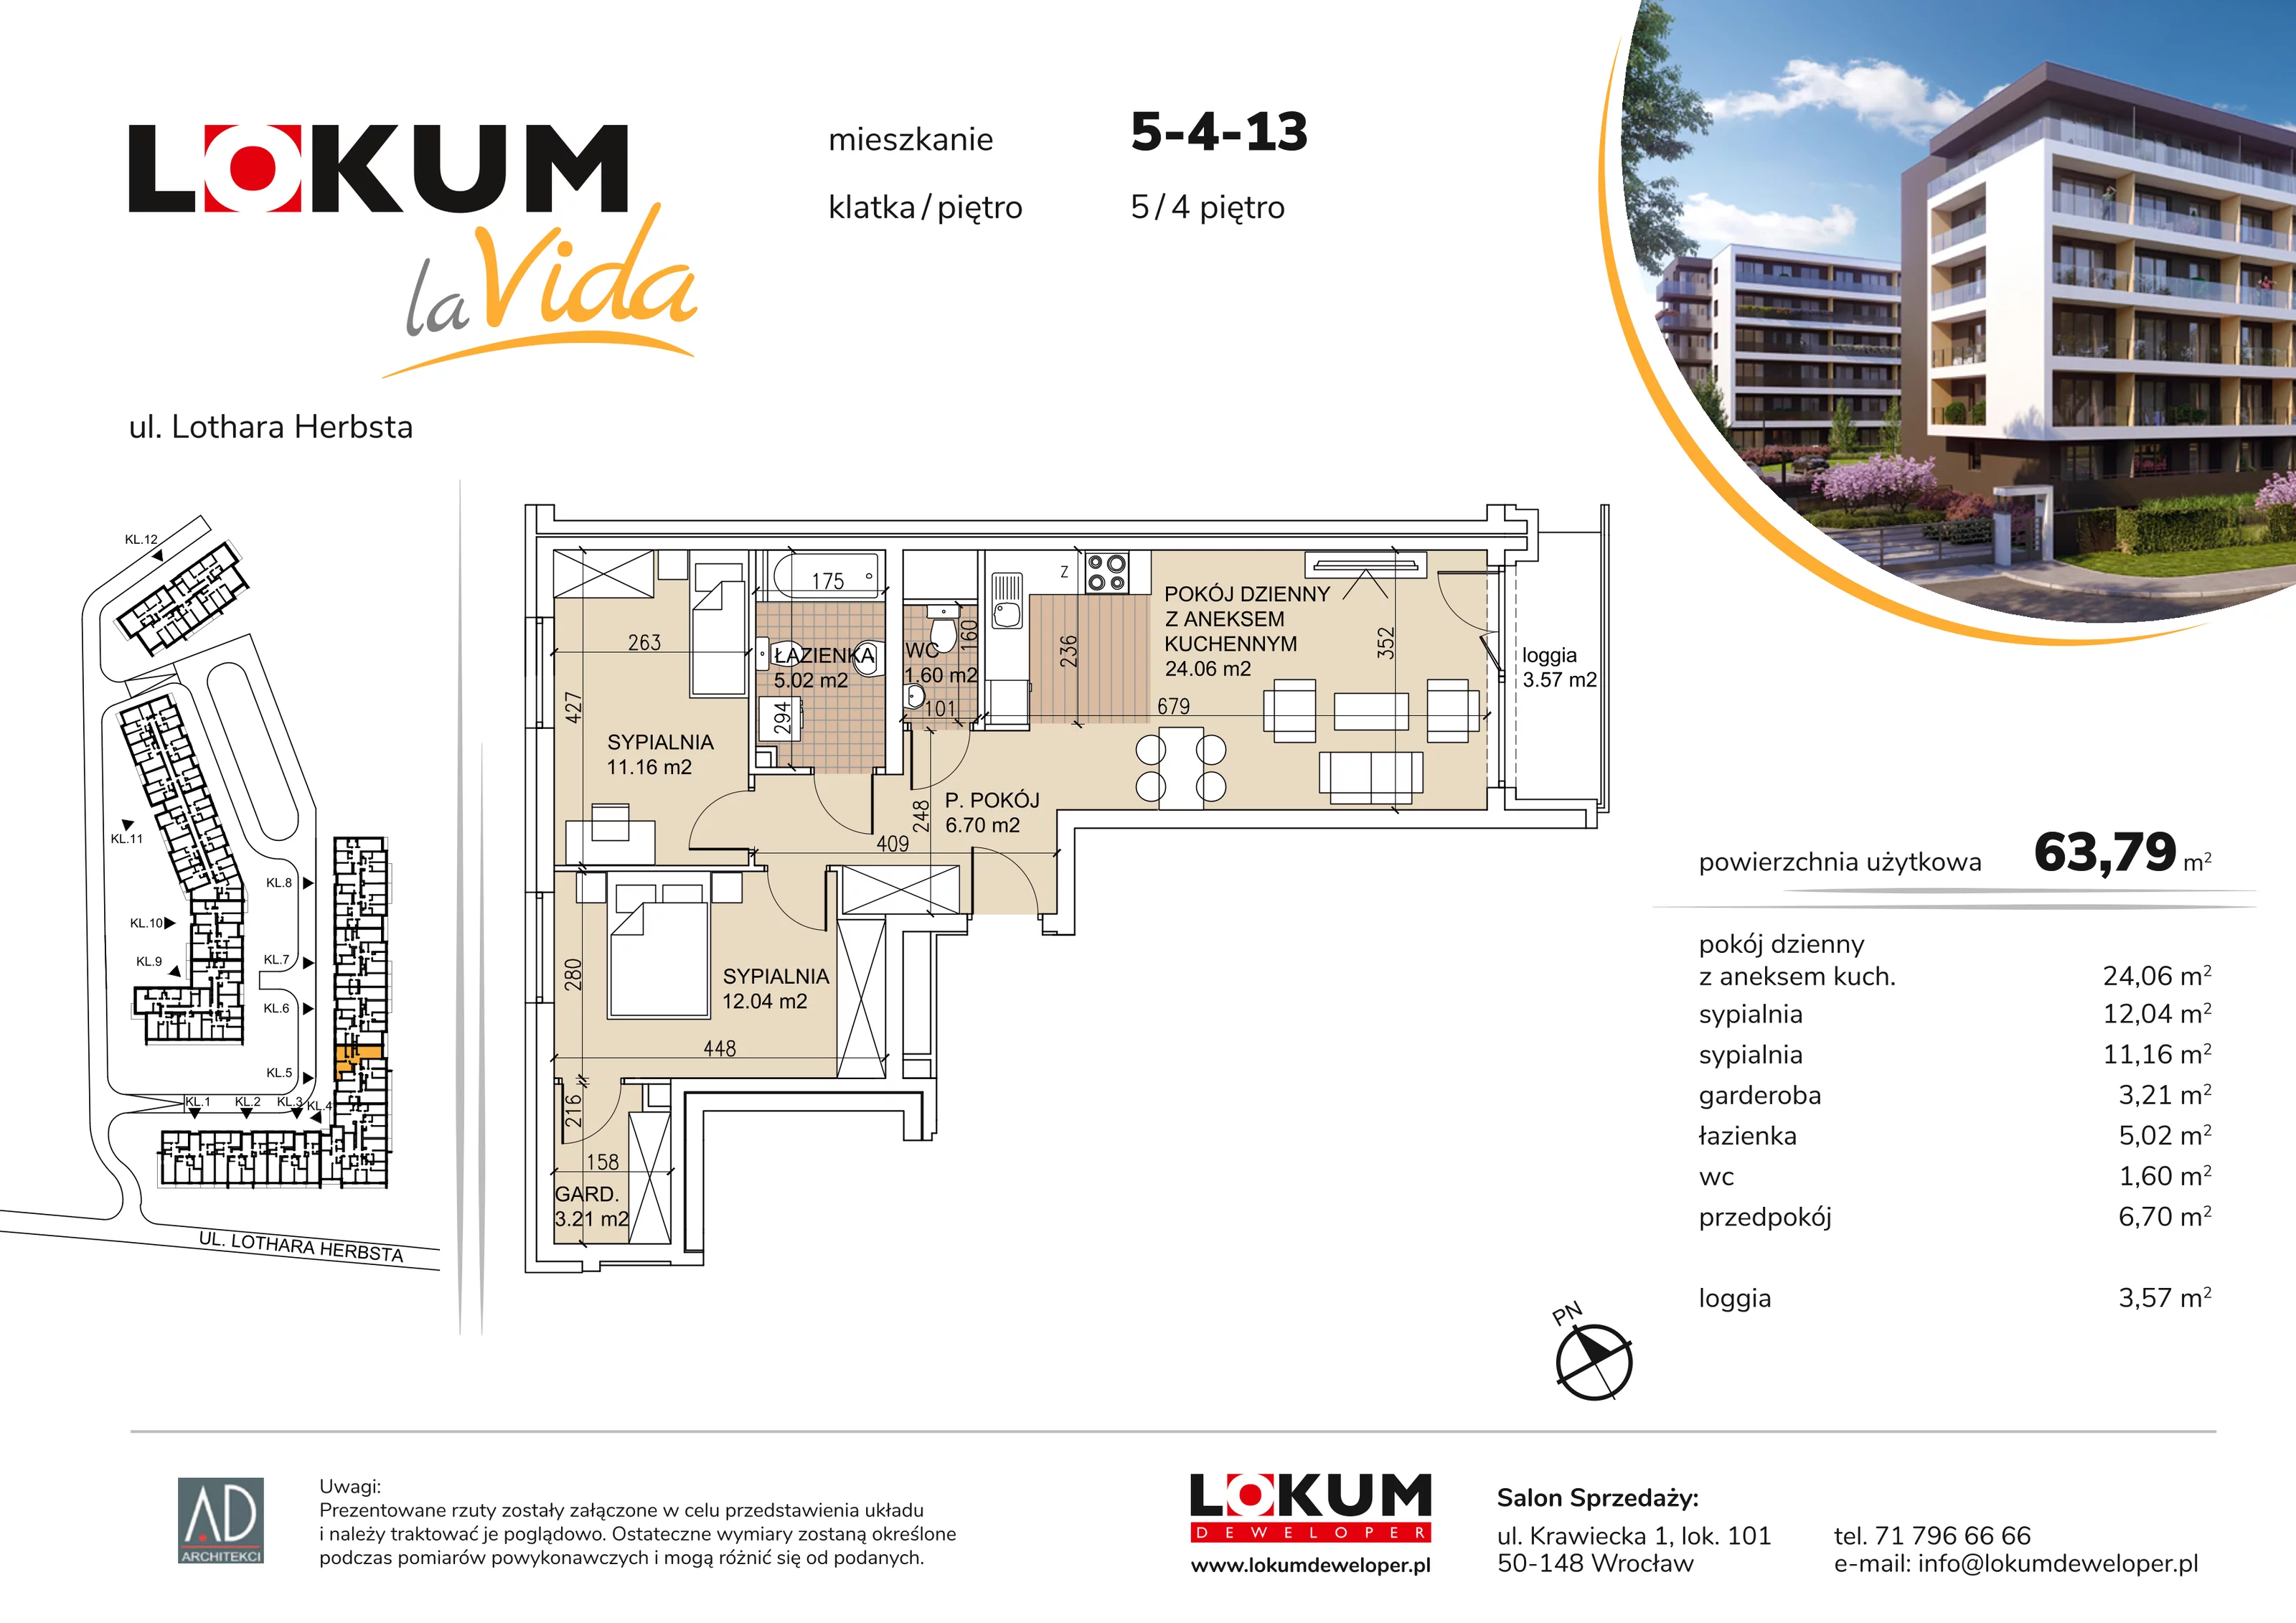 Mieszkanie 63,79 m², piętro 4, oferta nr 5-4-13, Lokum la Vida, Wrocław, Sołtysowice, ul. Lothara Herbsta